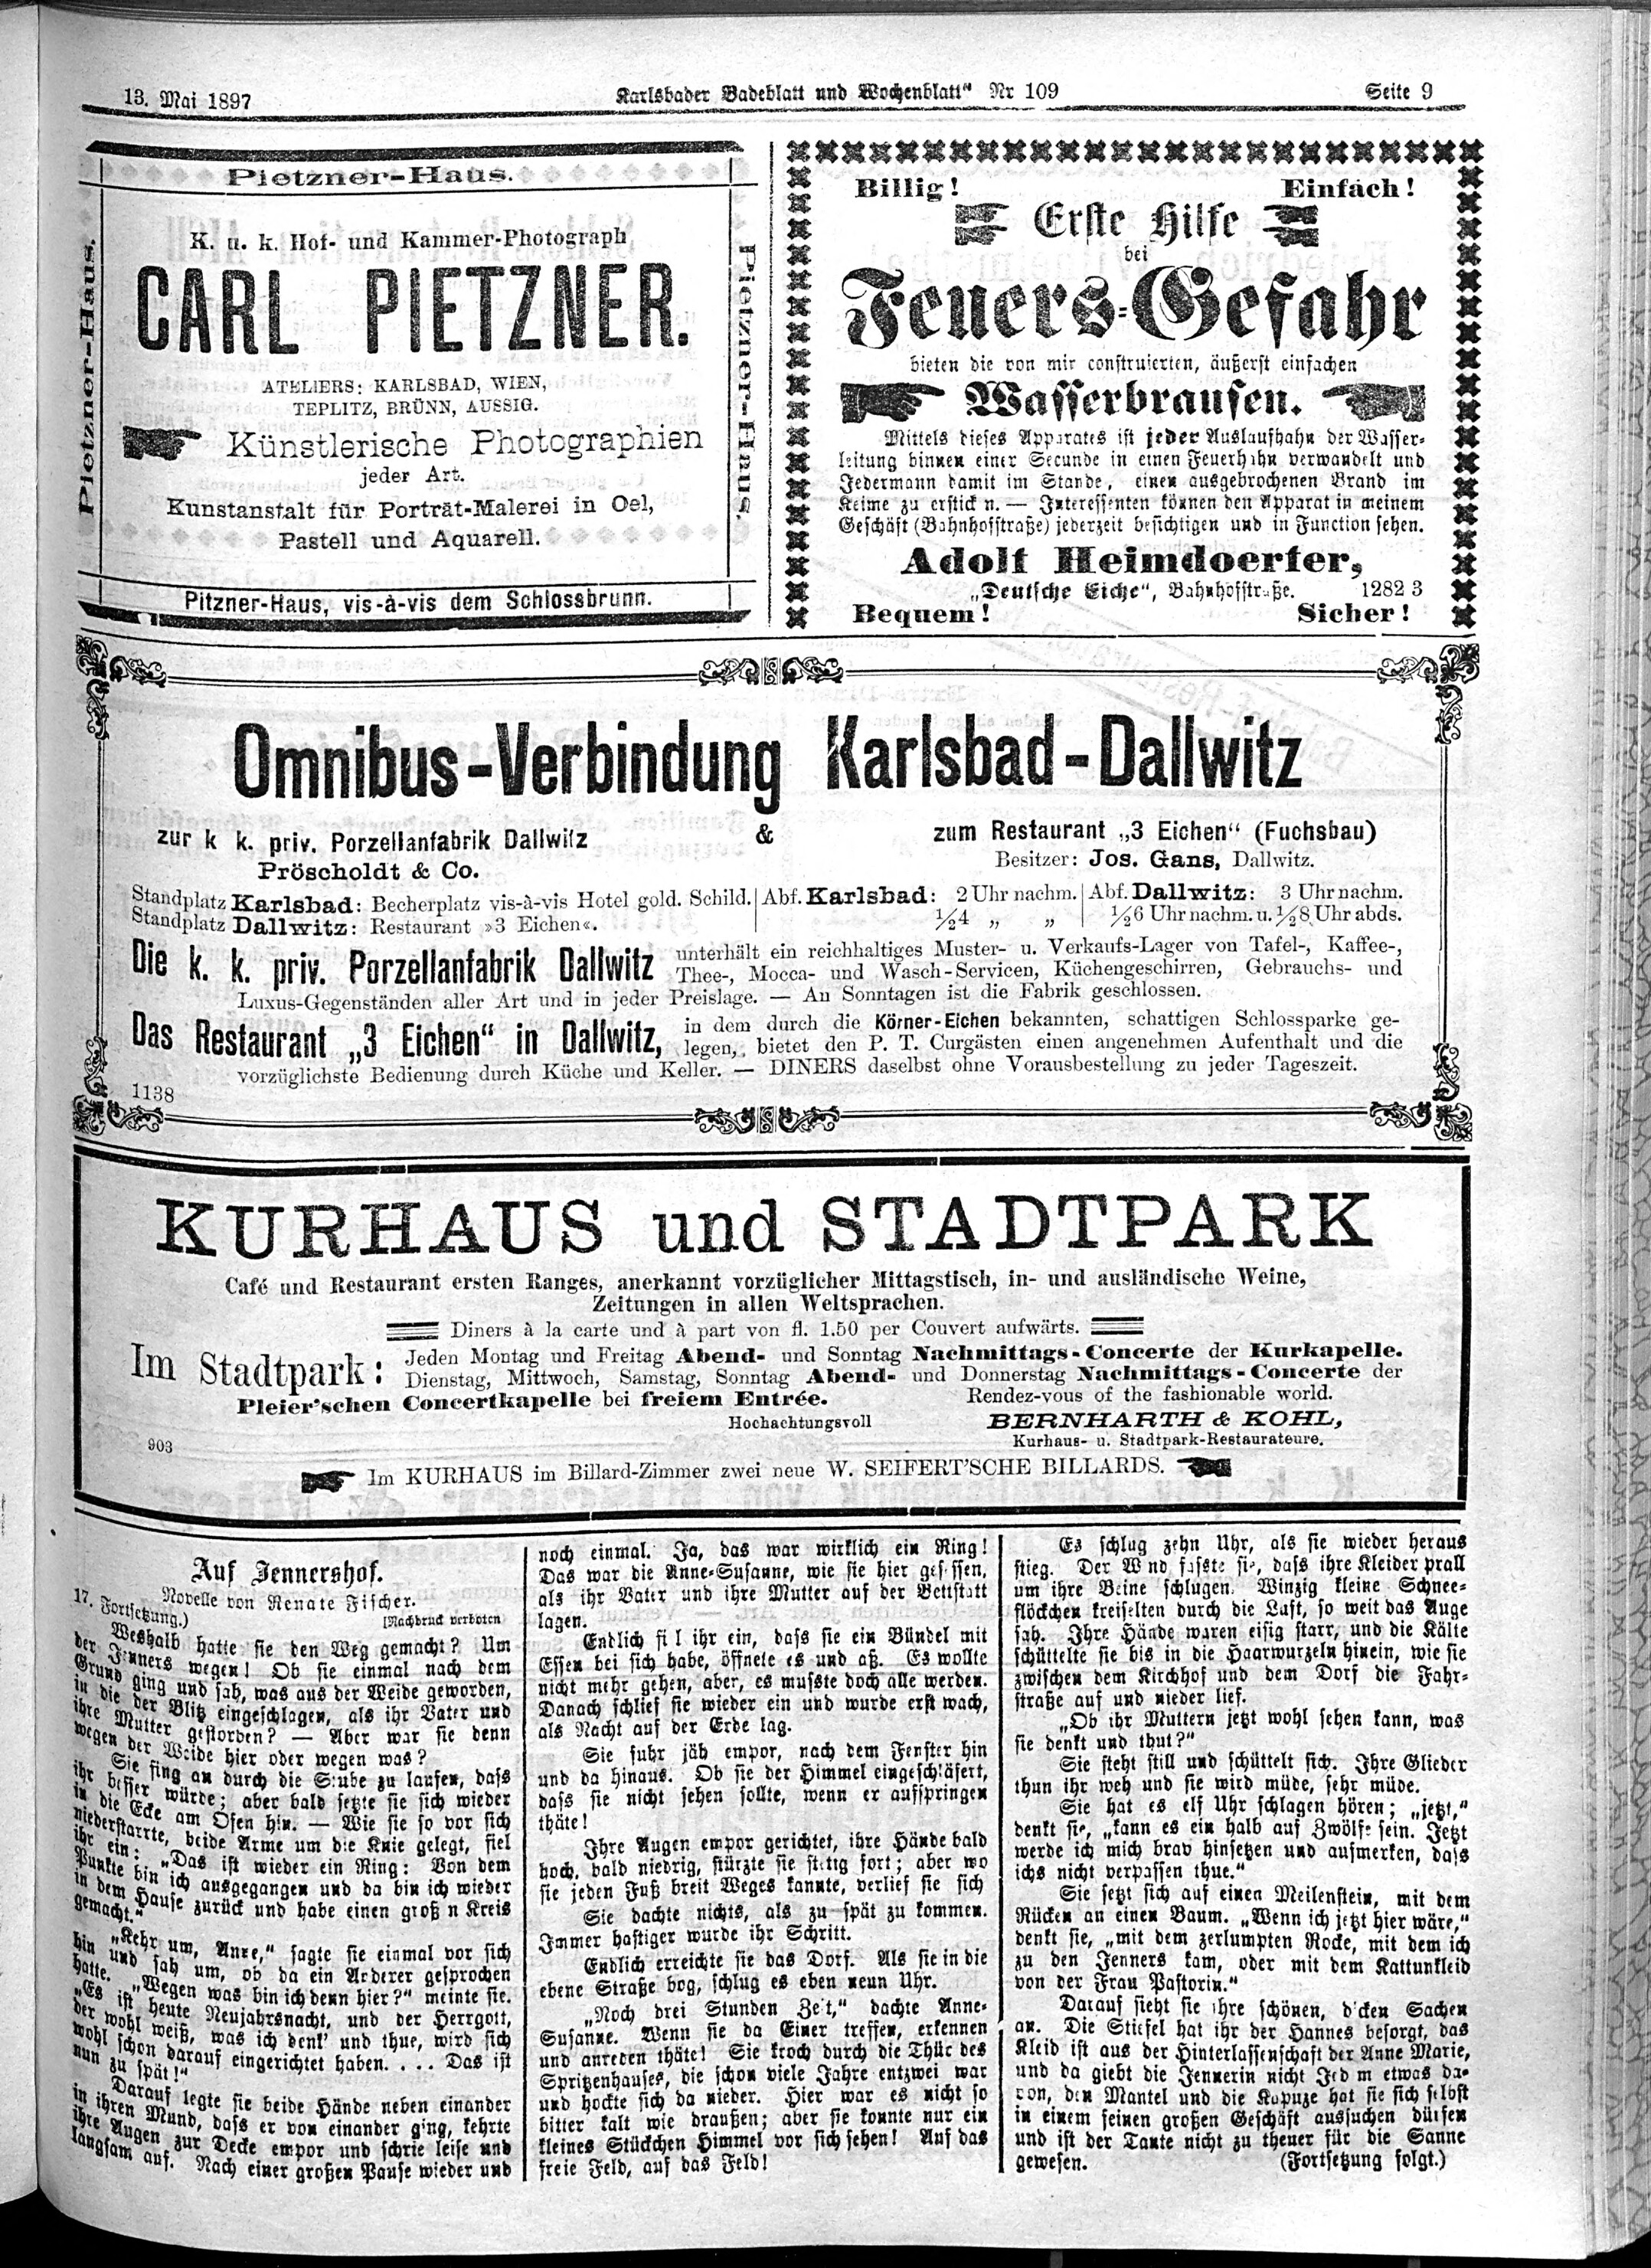 9. karlsbader-badeblatt-1897-05-13-n109_4885